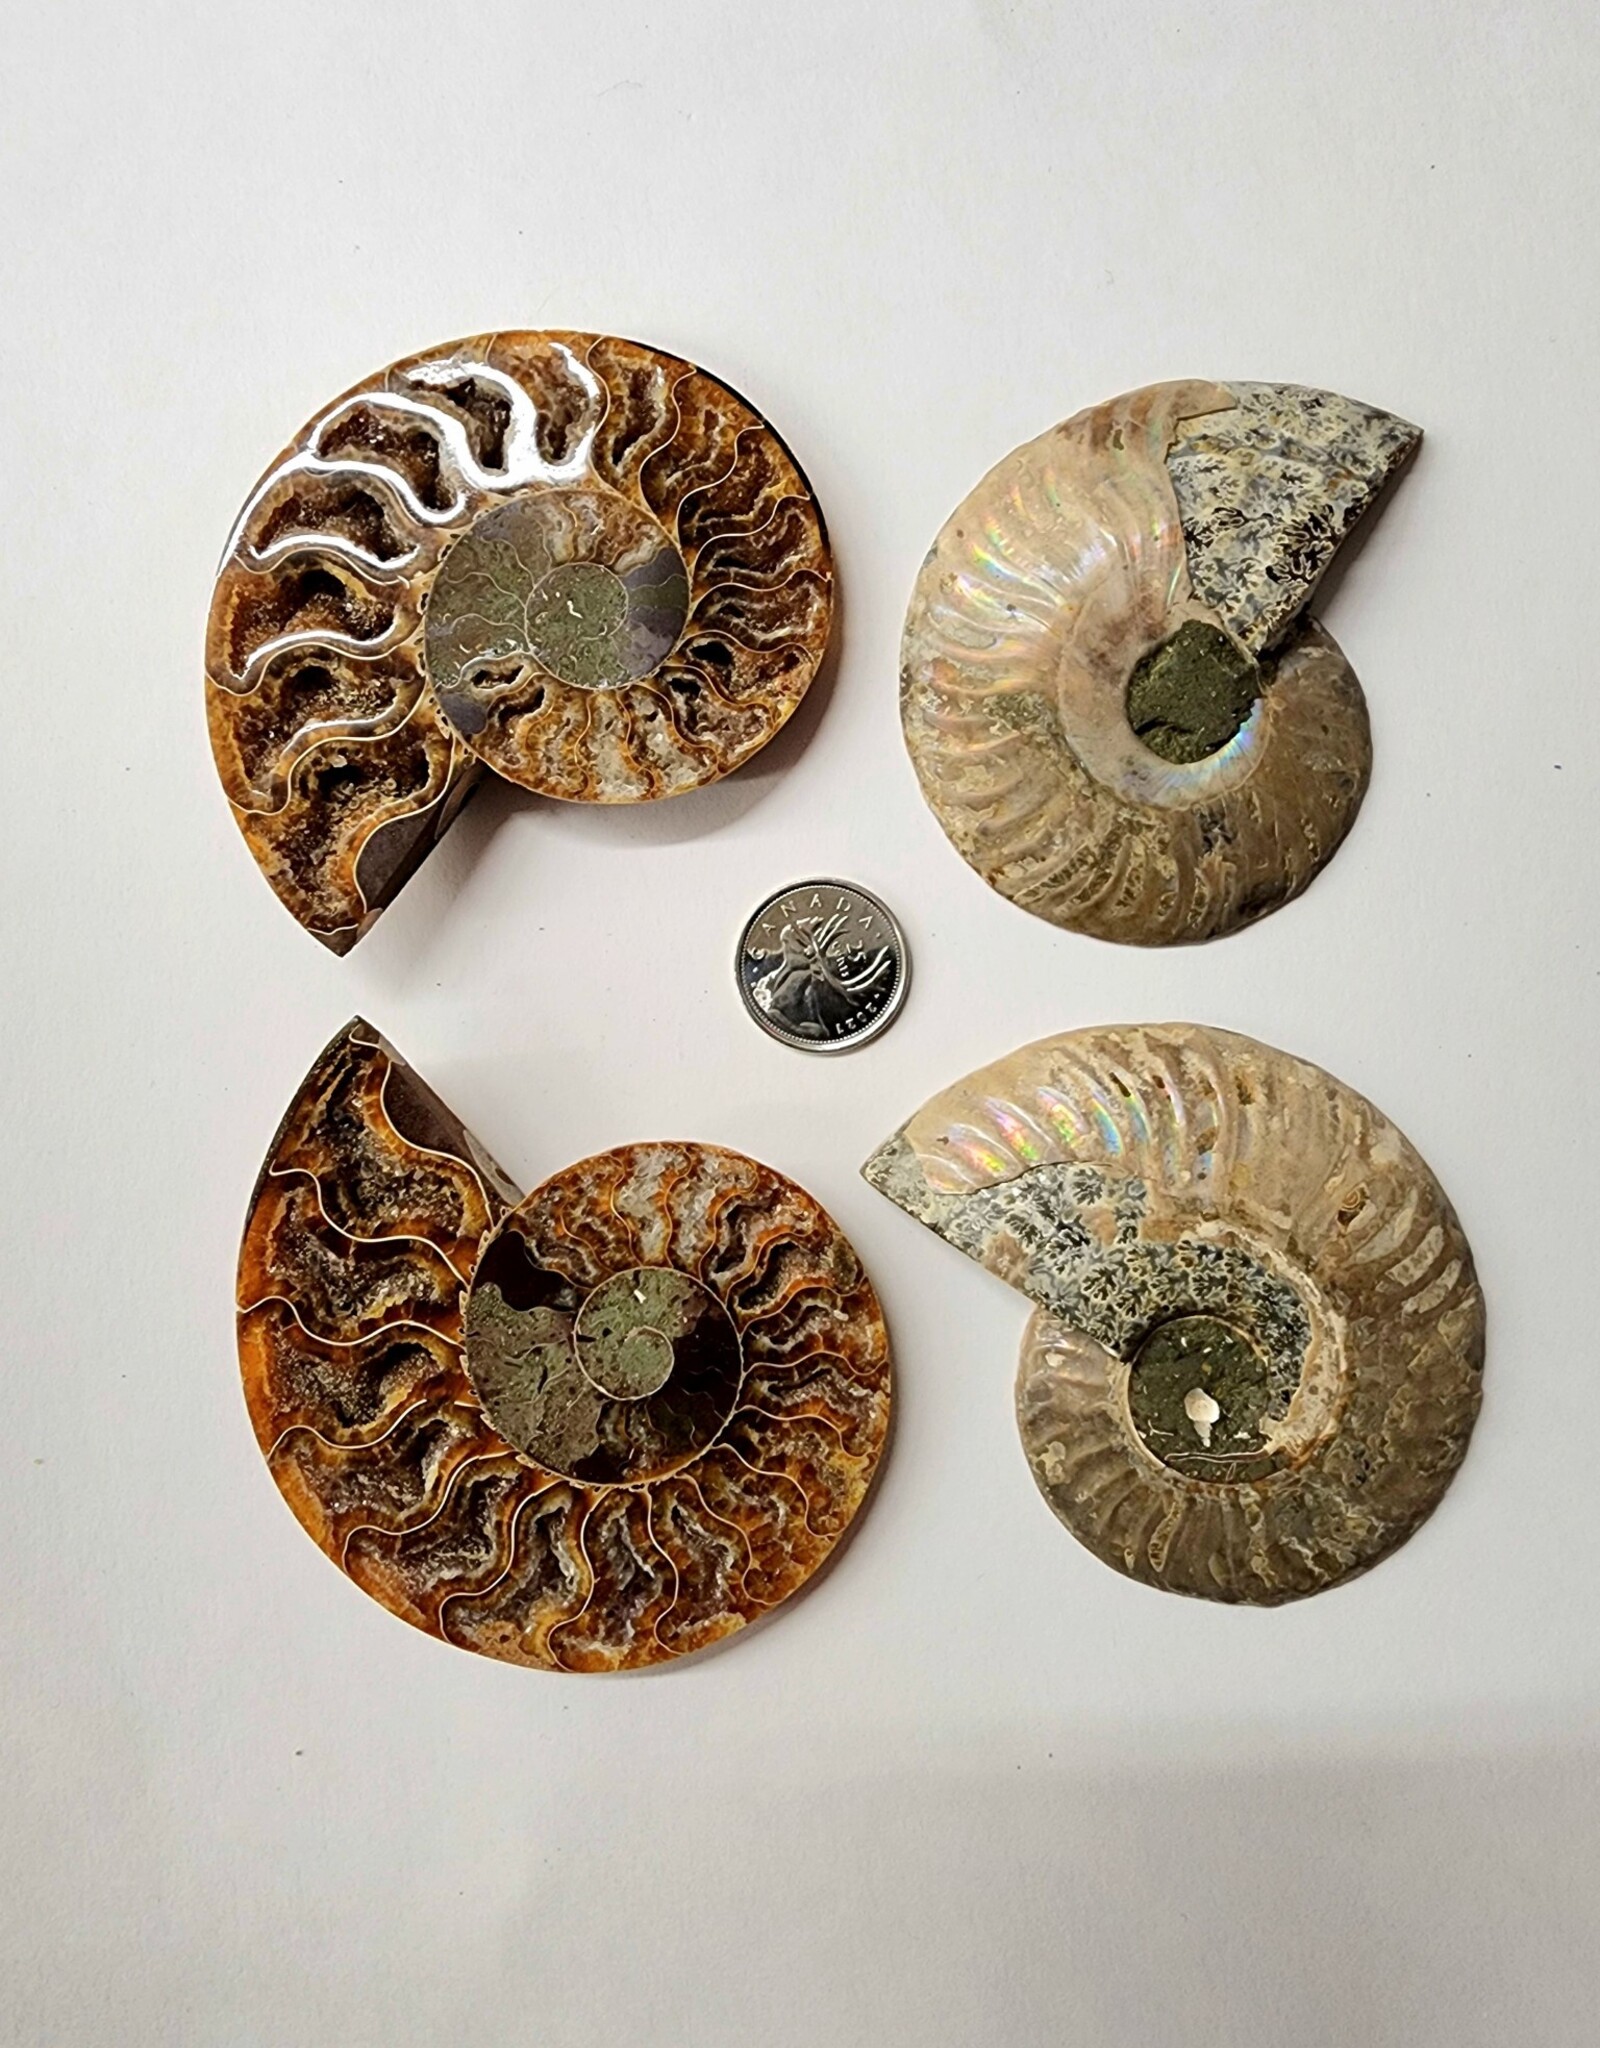 Ammonite Pair Large